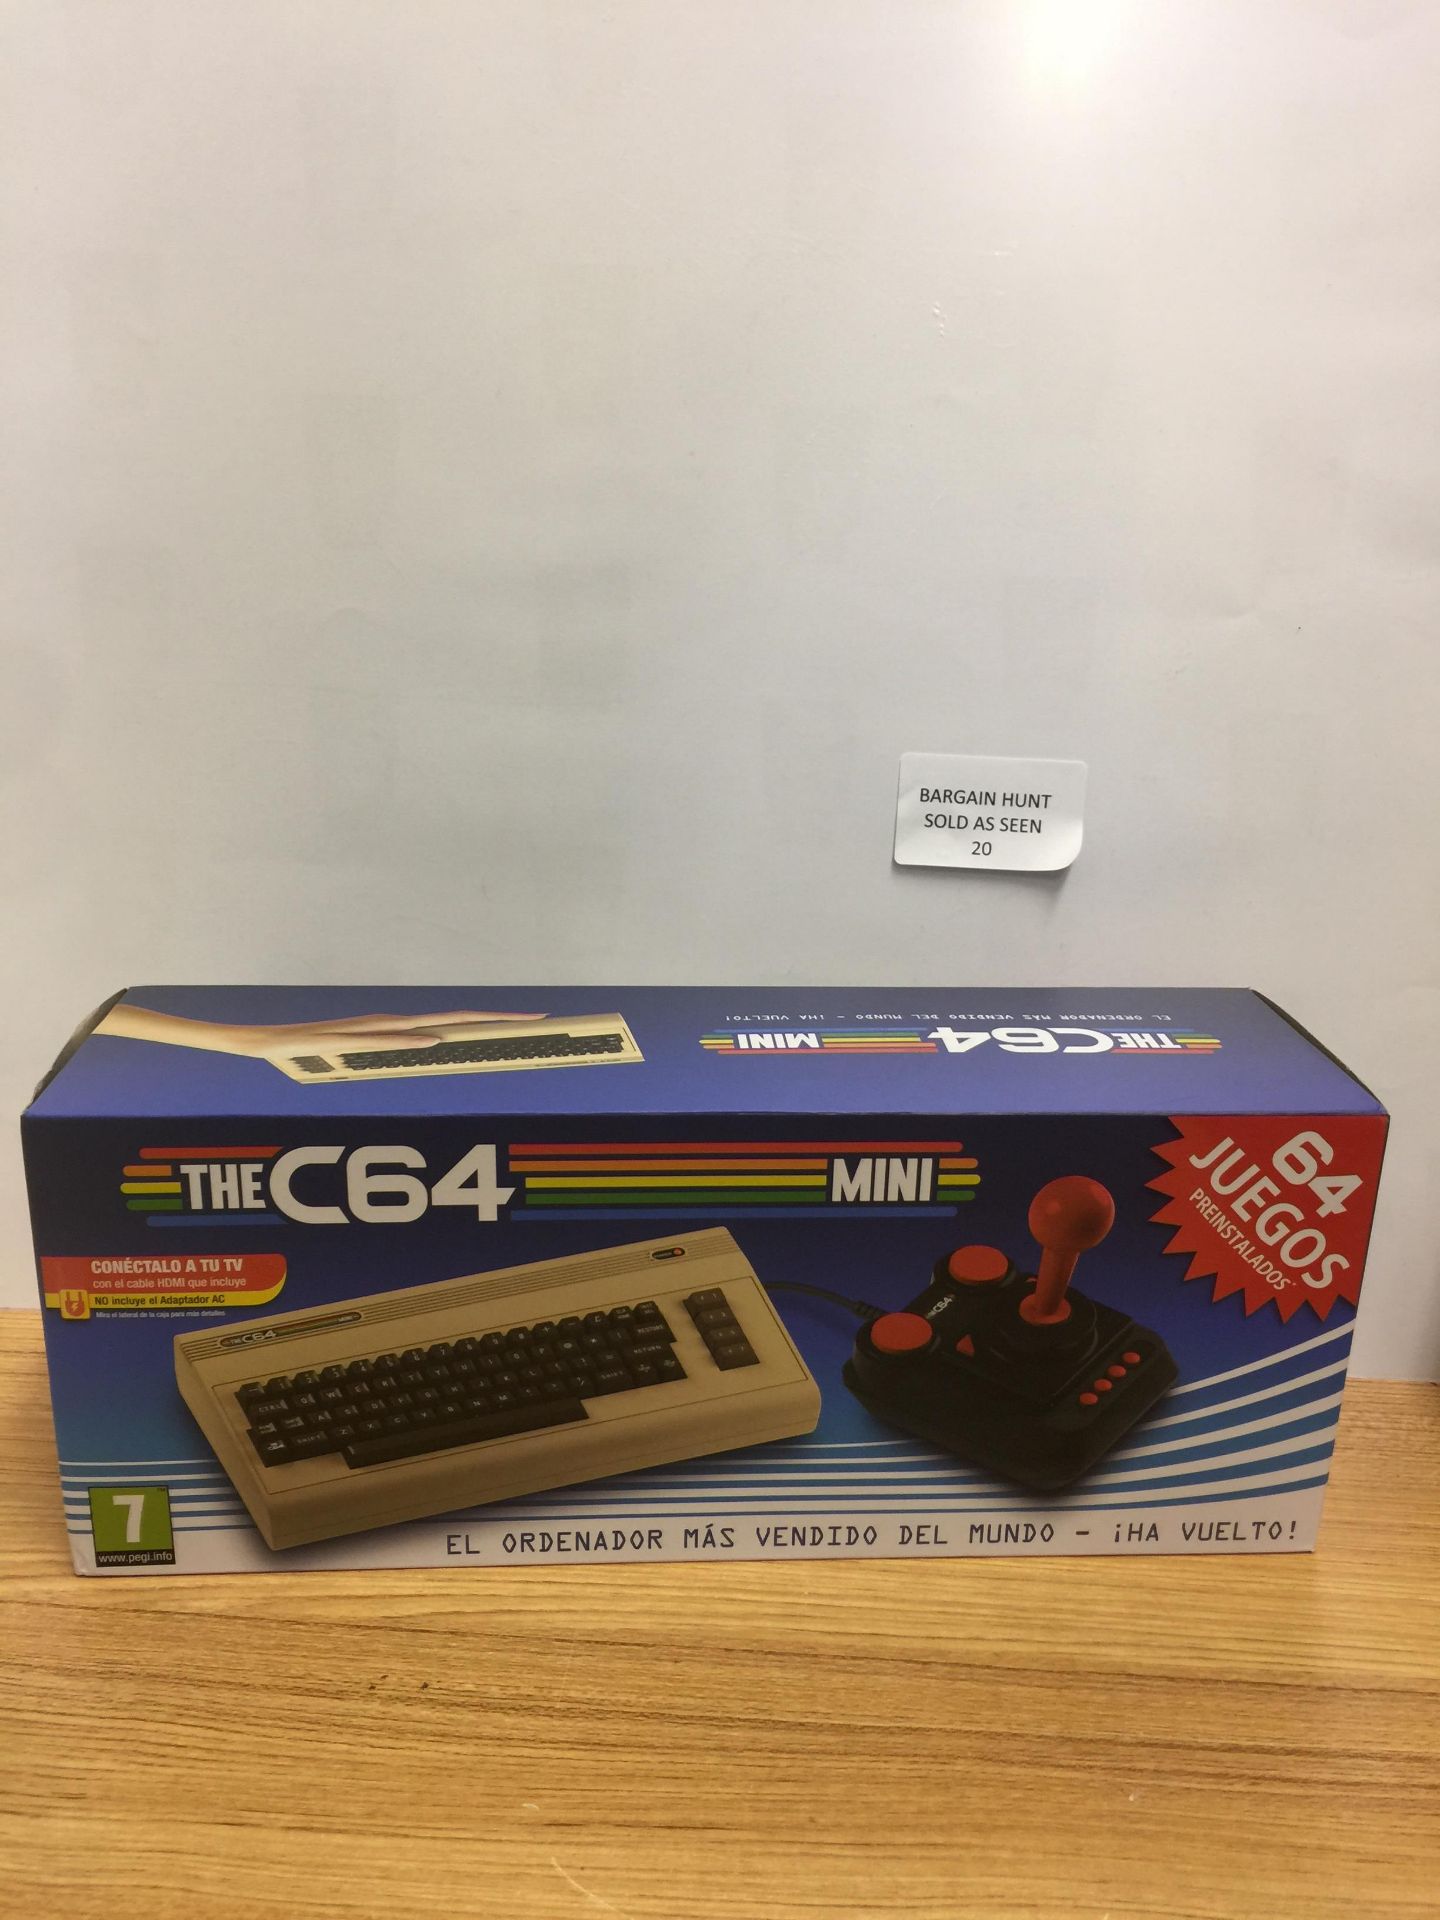 The Commodore C64 Mini Console